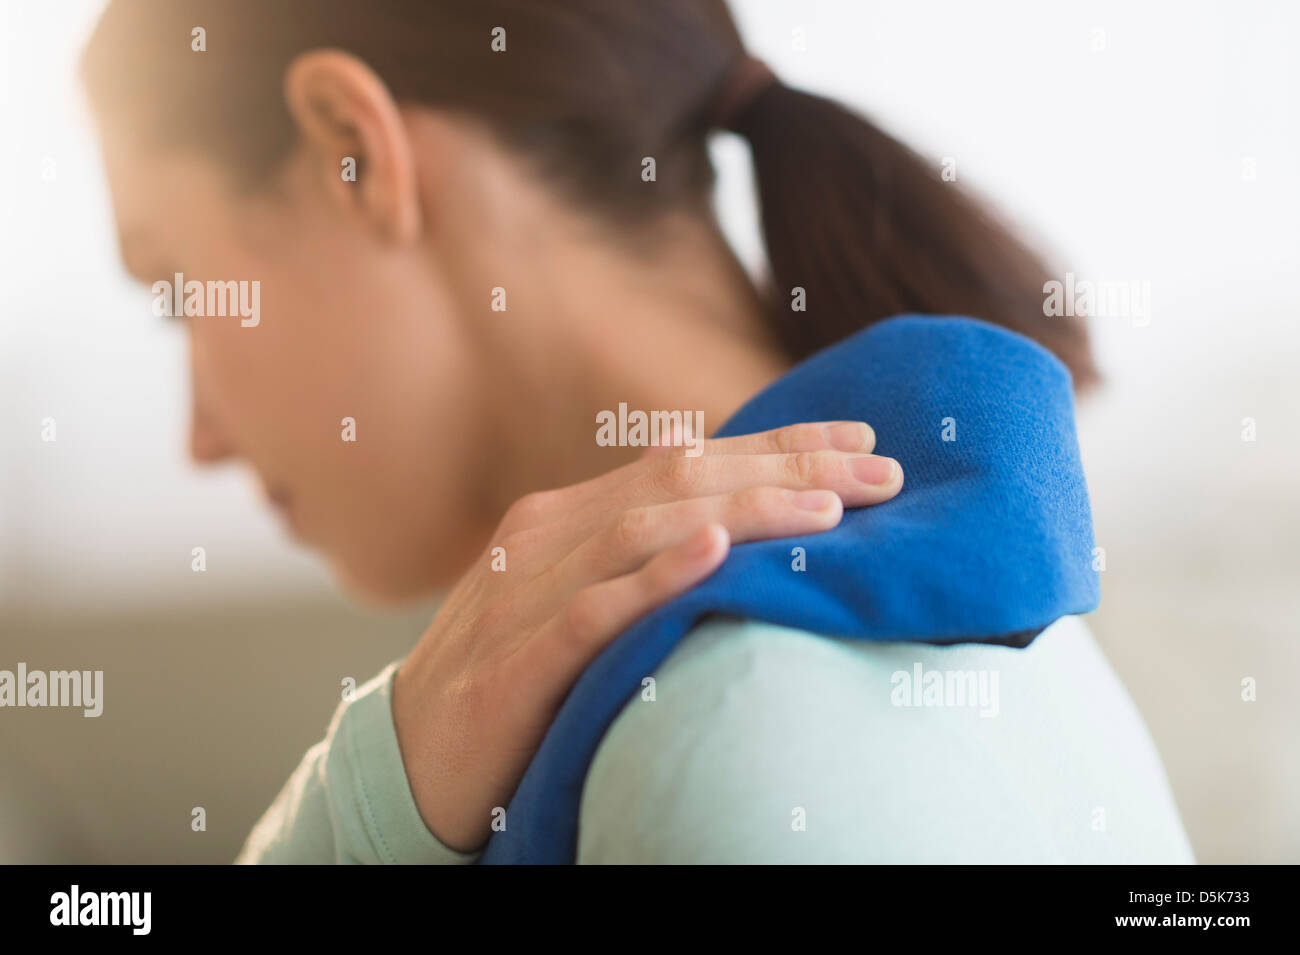 Woman touching aching back Stock Photo